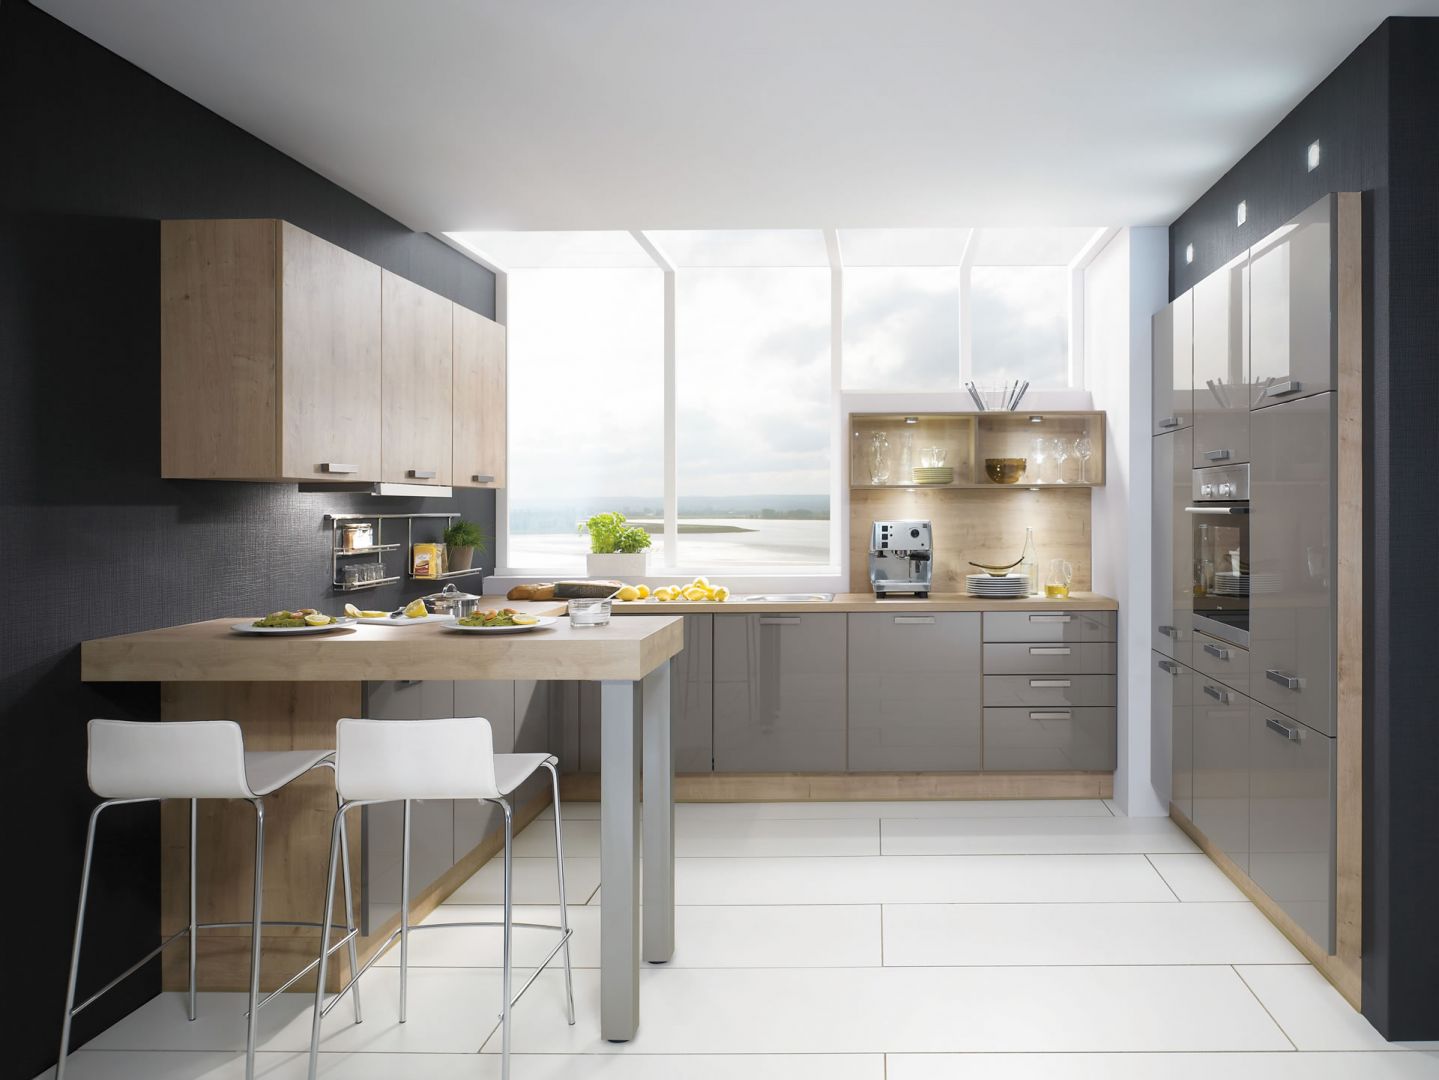 Doskonałym zabiegiem powiększającym kuchnię jest umieszczenie szafy kuchennej we wnęce. To pozwala zaoszczędzić dodatkowe centymetry w pomieszczeniu. Na zdjęciu model Lux 828 Fot. Nobilia